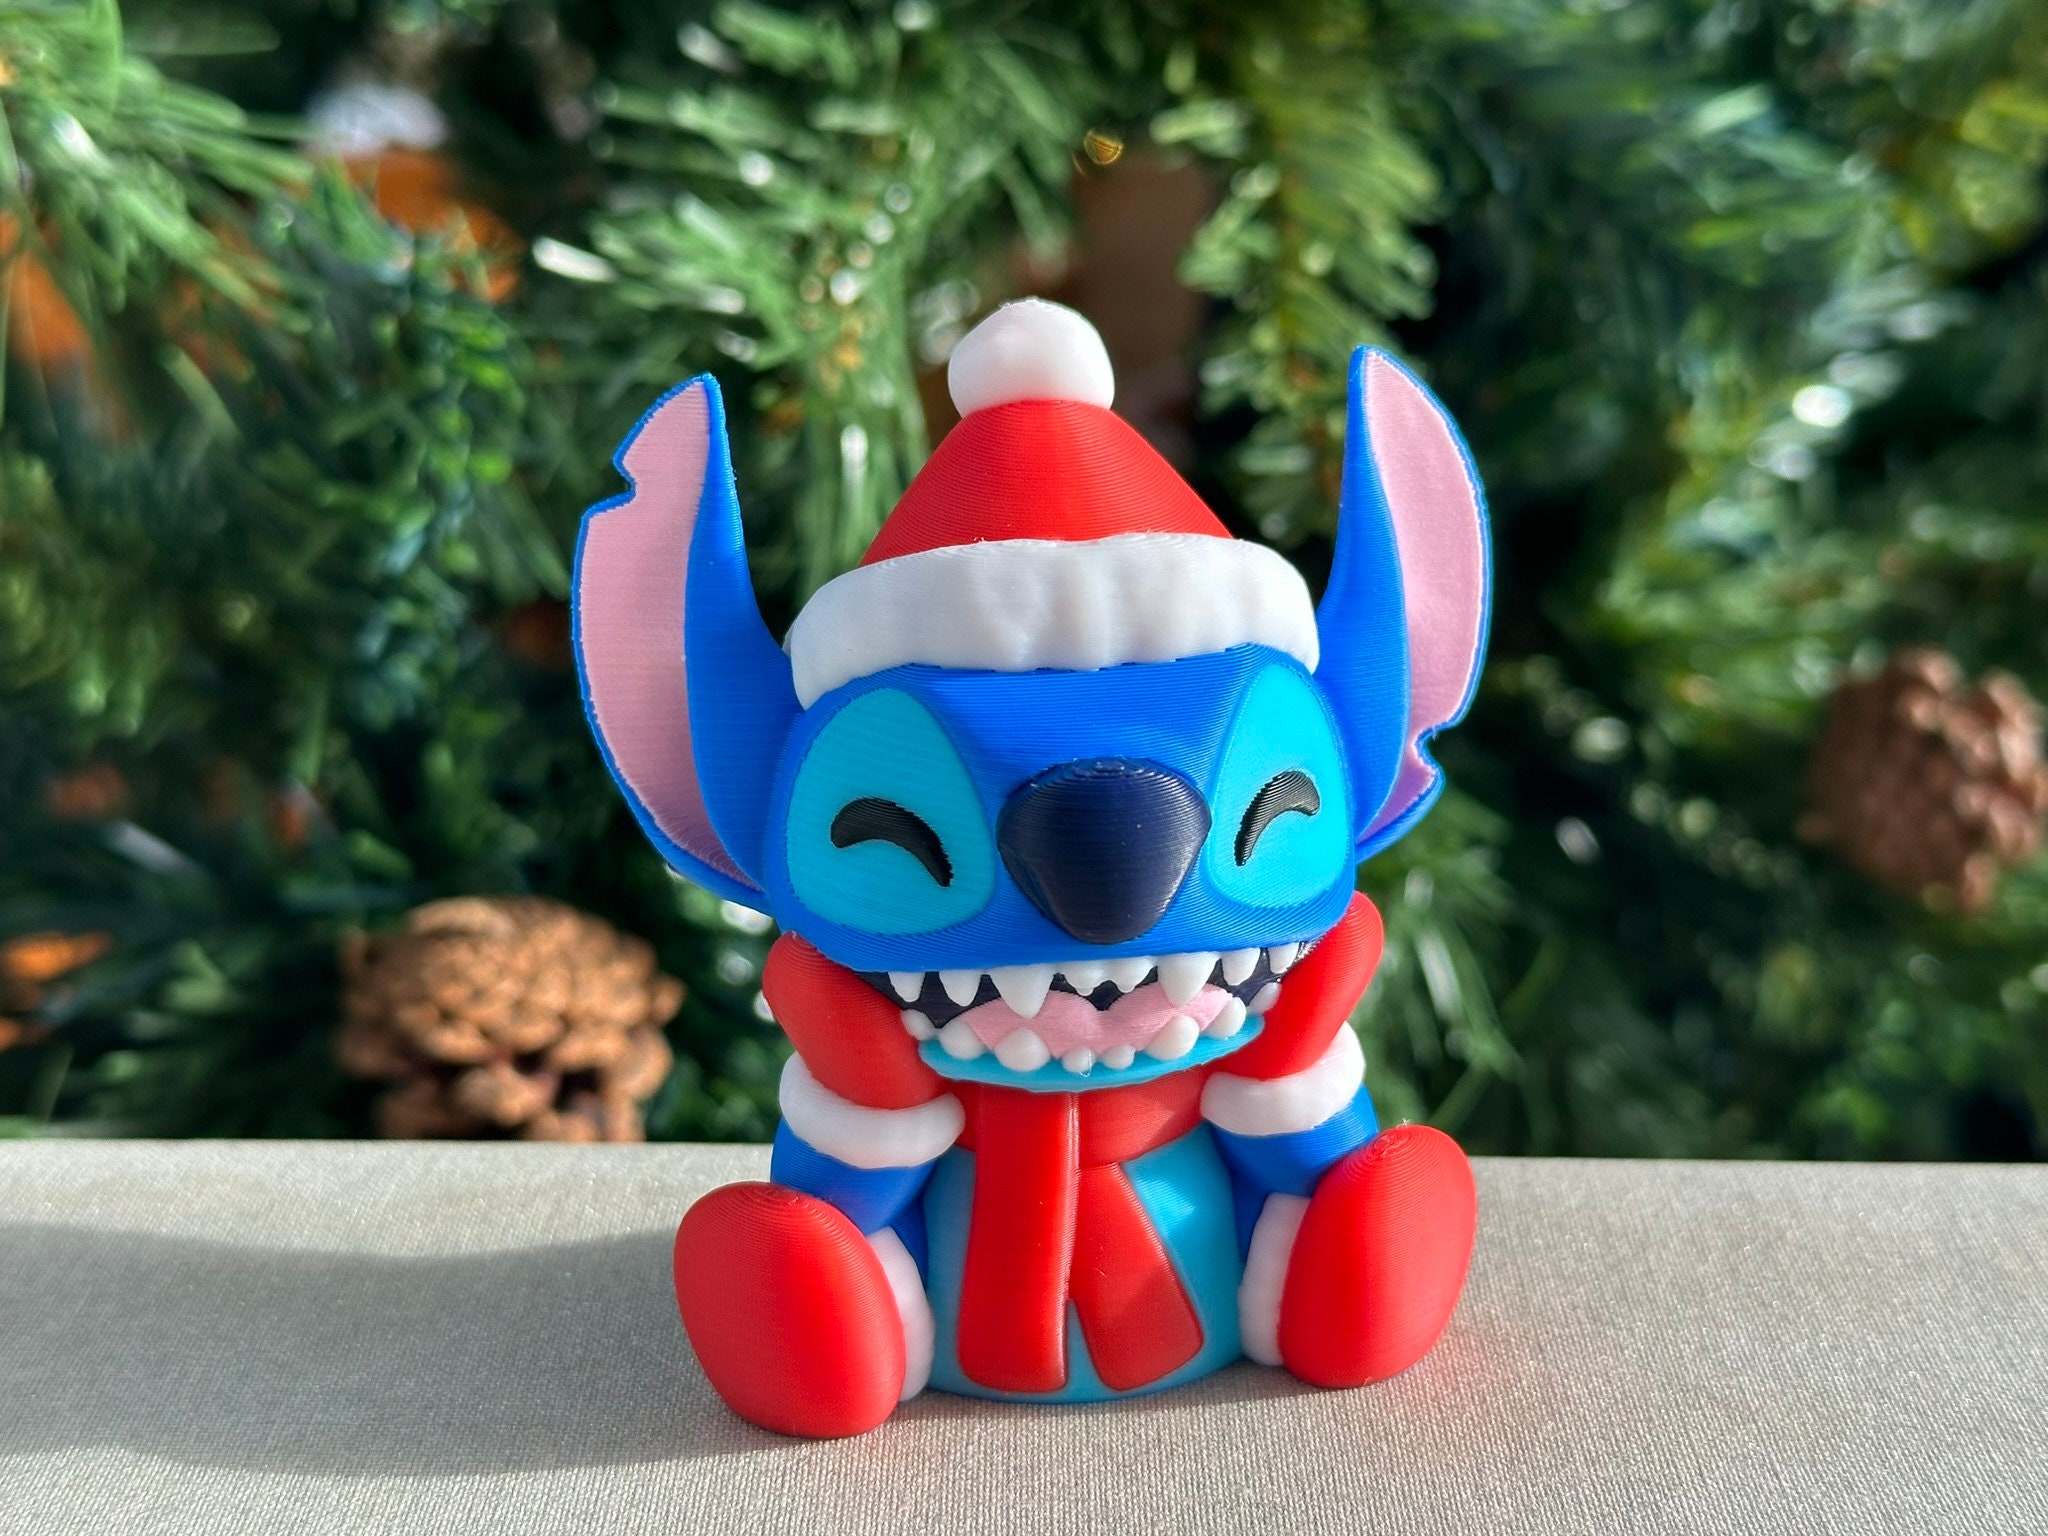 Les 11 cadeaux Stitch à offrir pour Noël - MesCadeaux